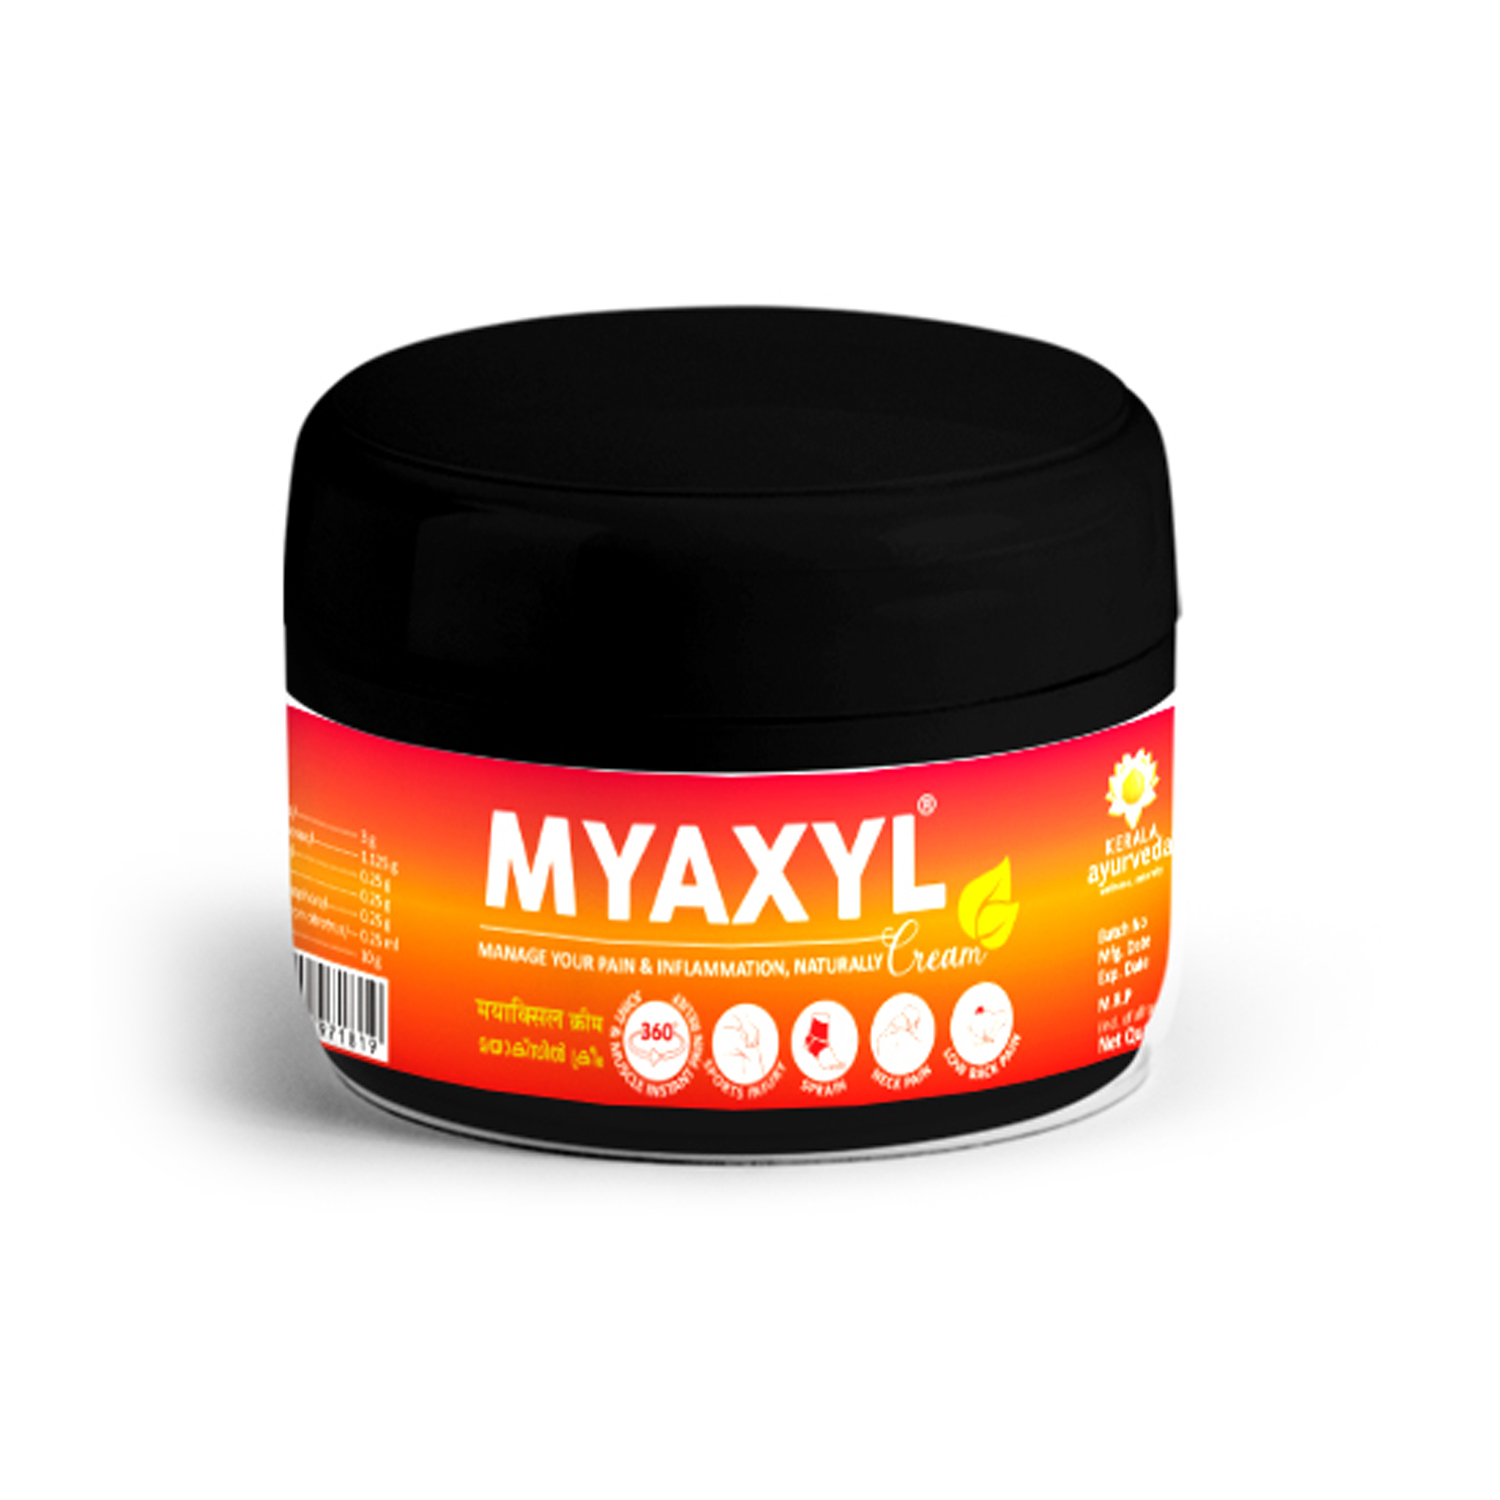 Myaxyl Cream